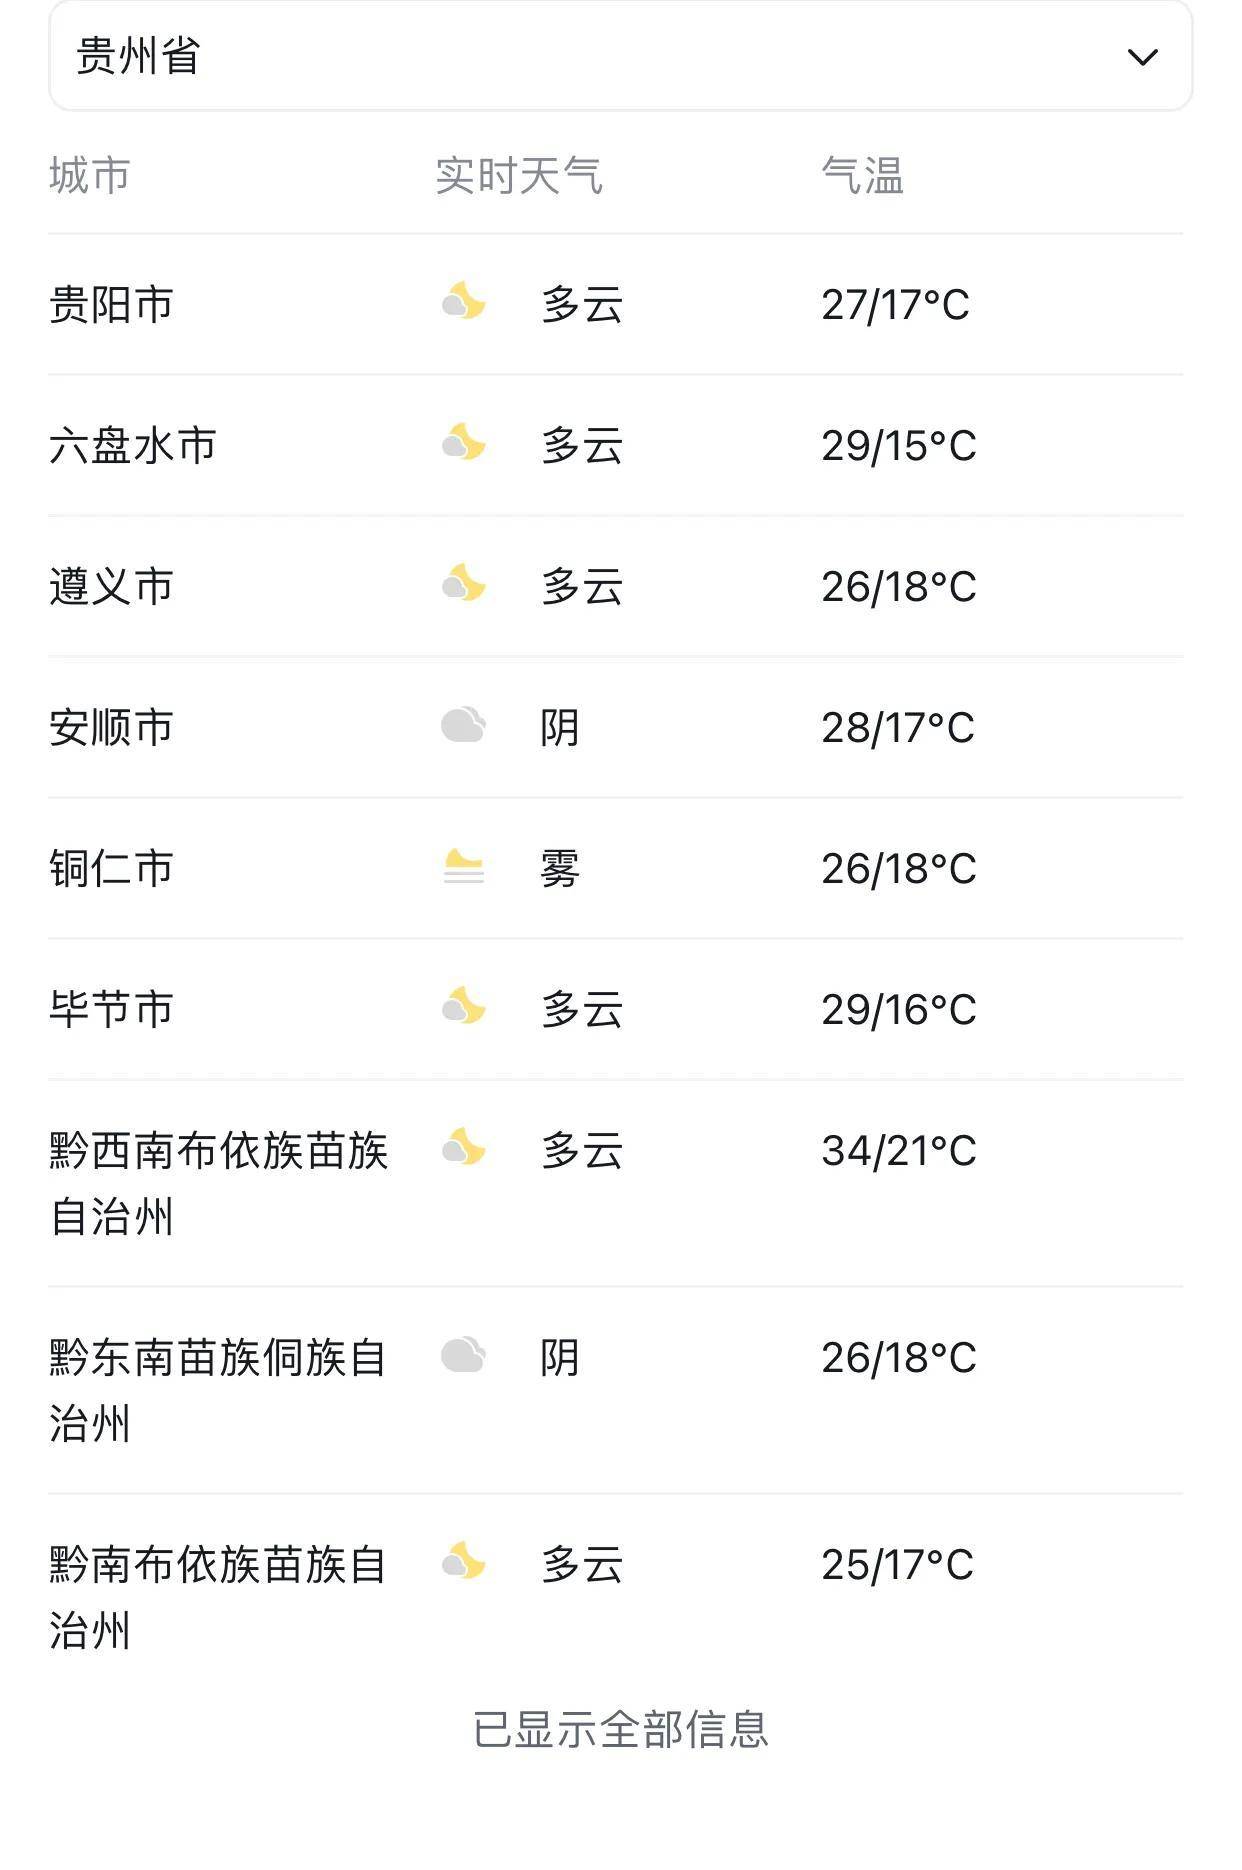 贵州省气象台总之,贵州的天气变幻莫测,我们要时刻关注天气预报,做好